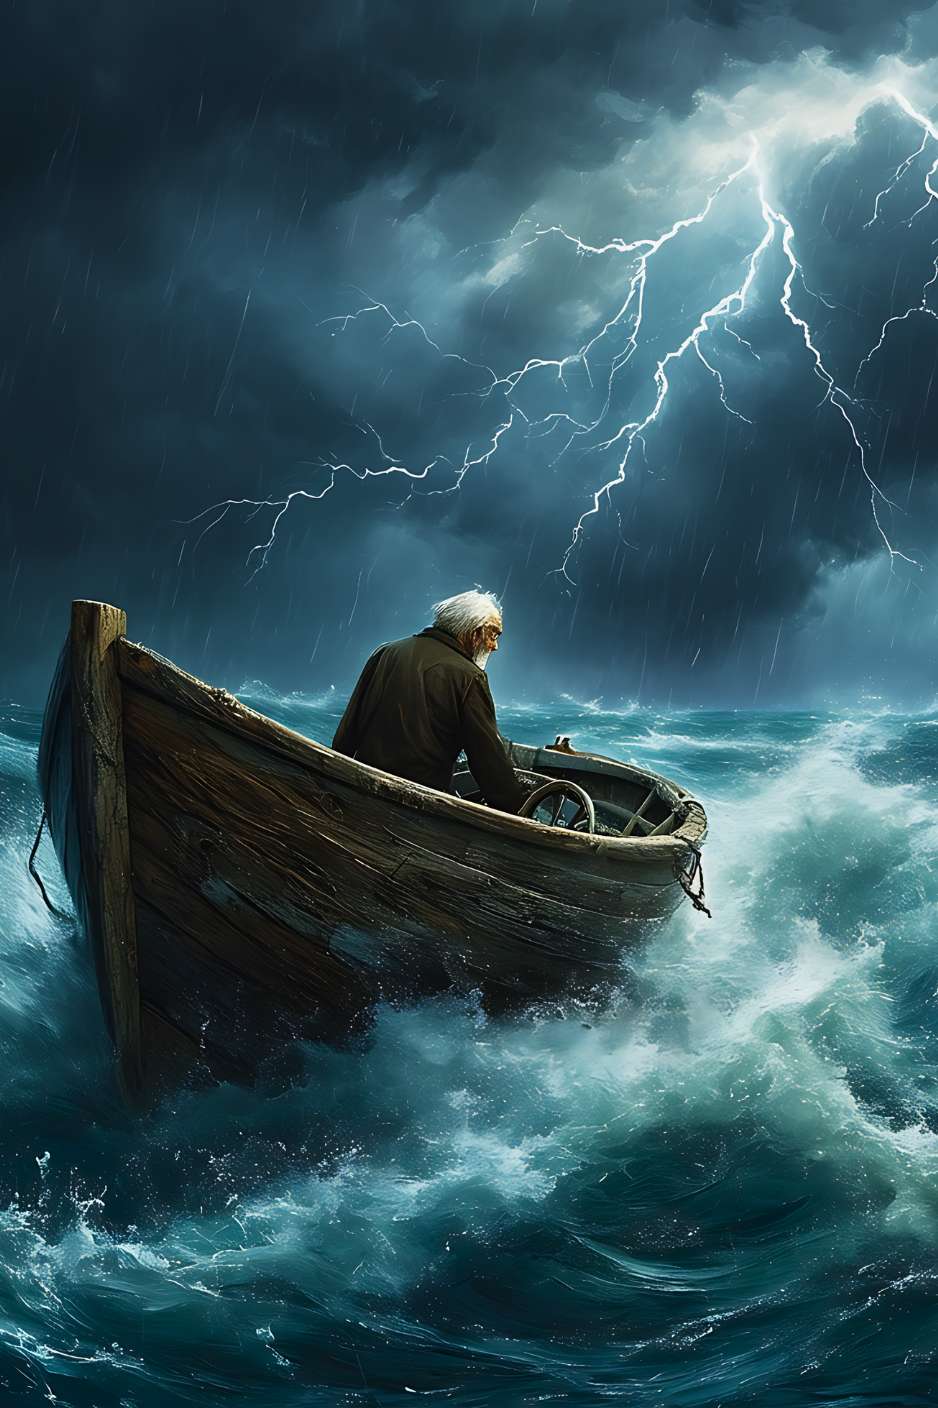 Dans la fureur du ciel et de la mer, le vieux marin affronte vaillamment l'orage, incarnant la résilience et la grandeur d'un cœur intrépide face à la tempête